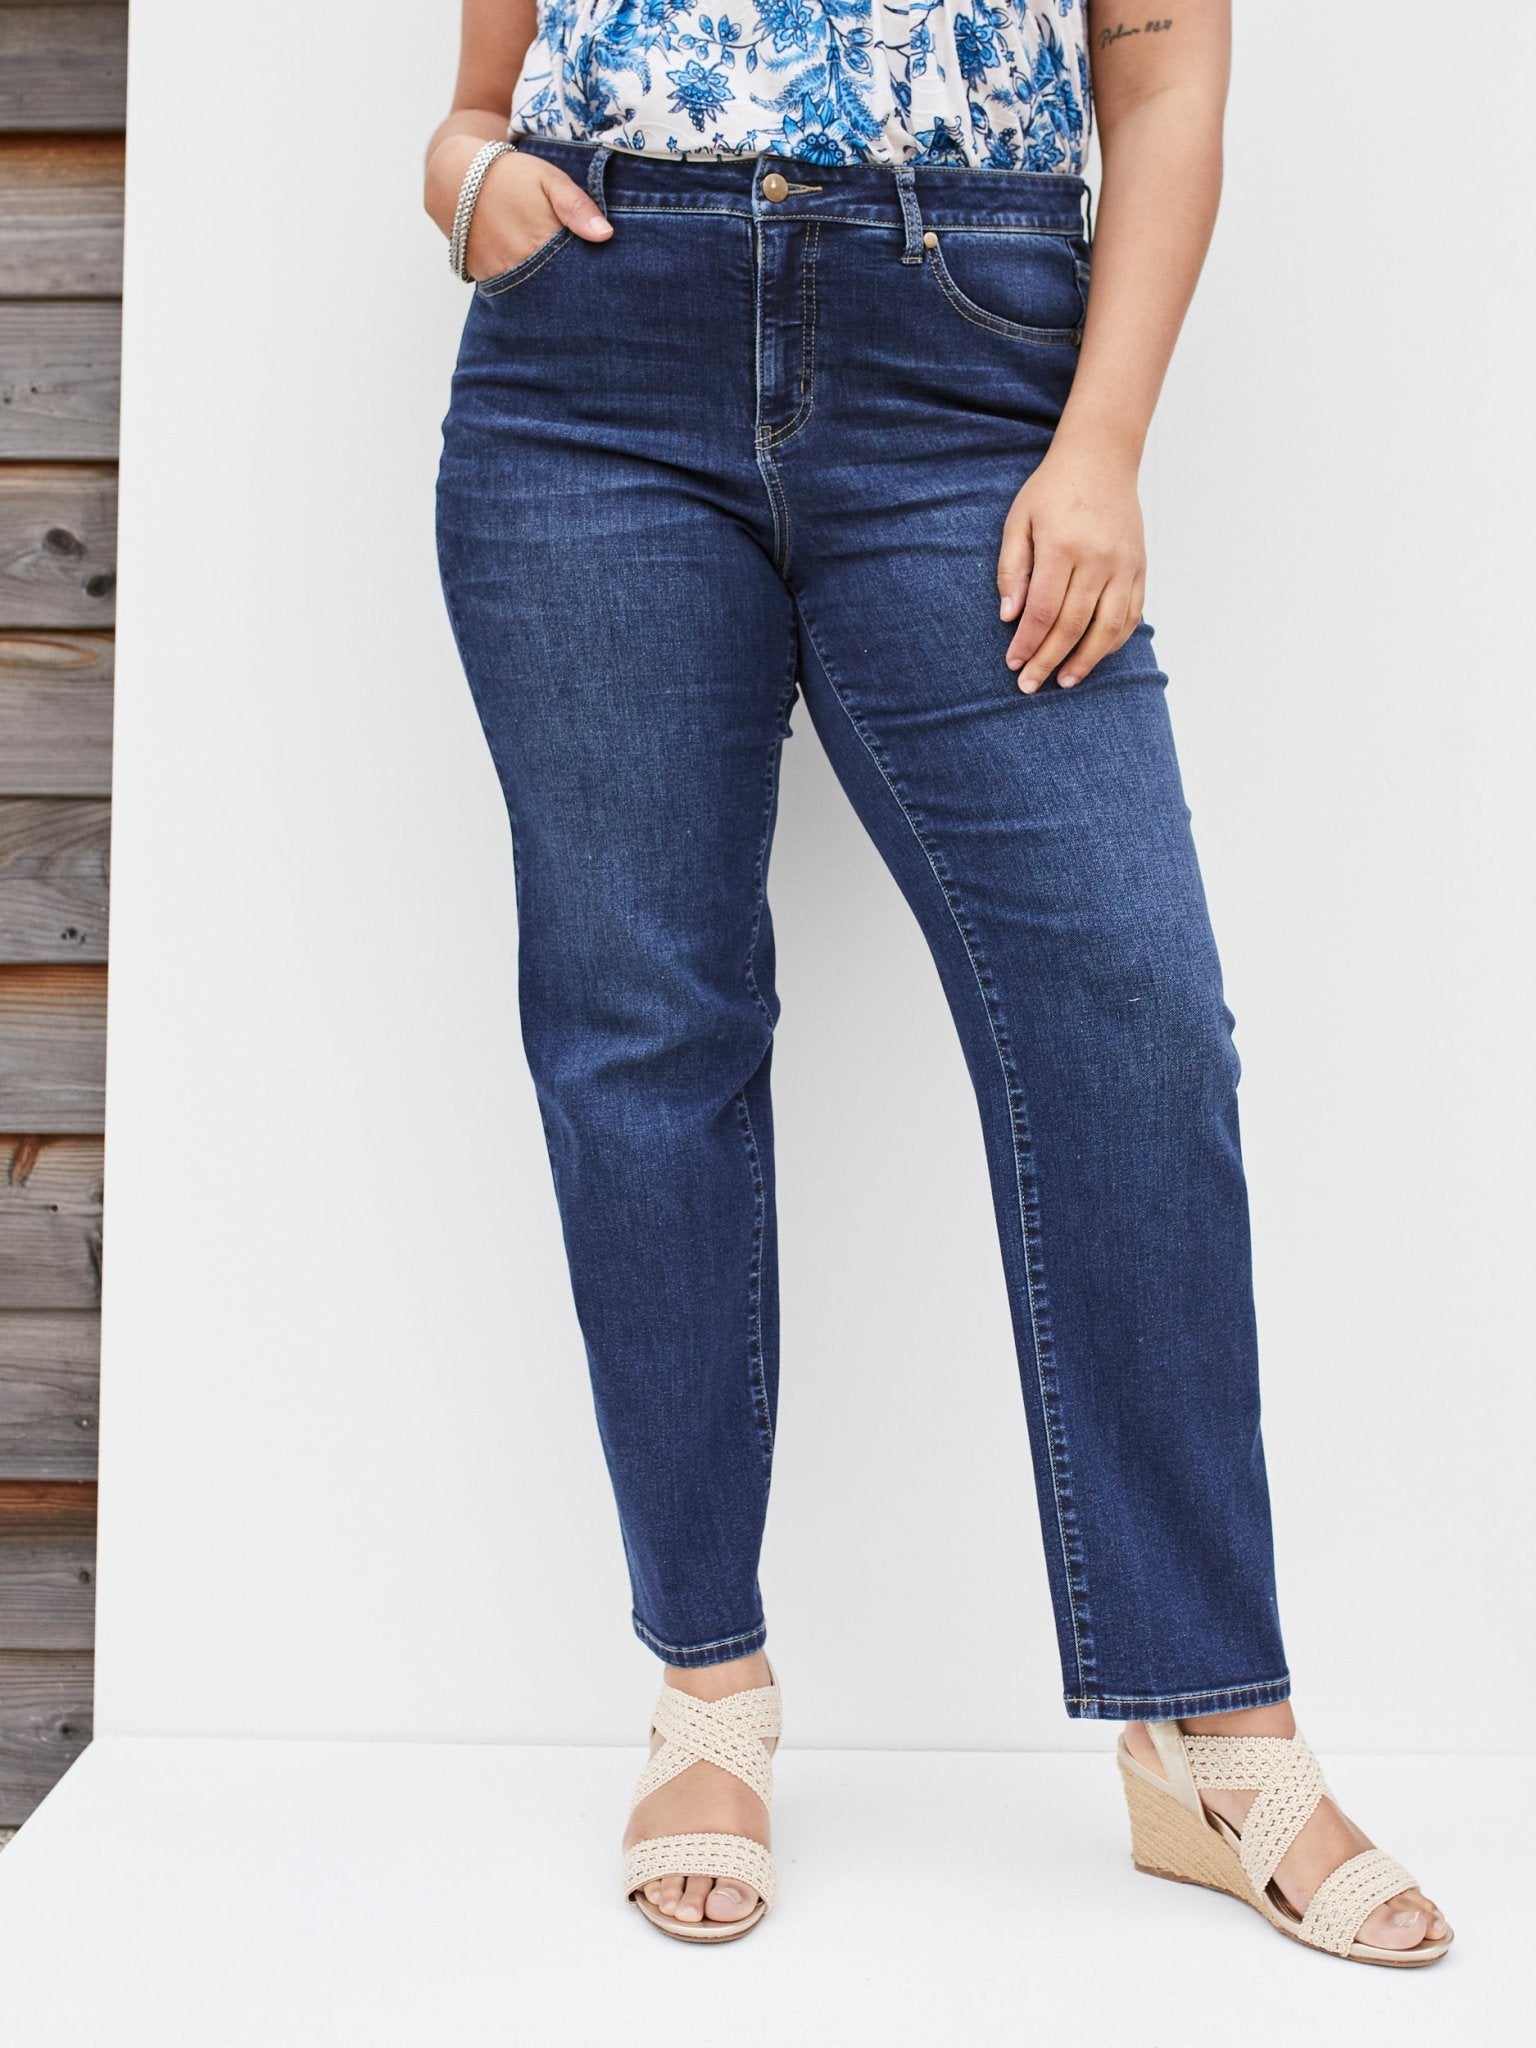 Plus Size Jeans For Women - Dressbarn